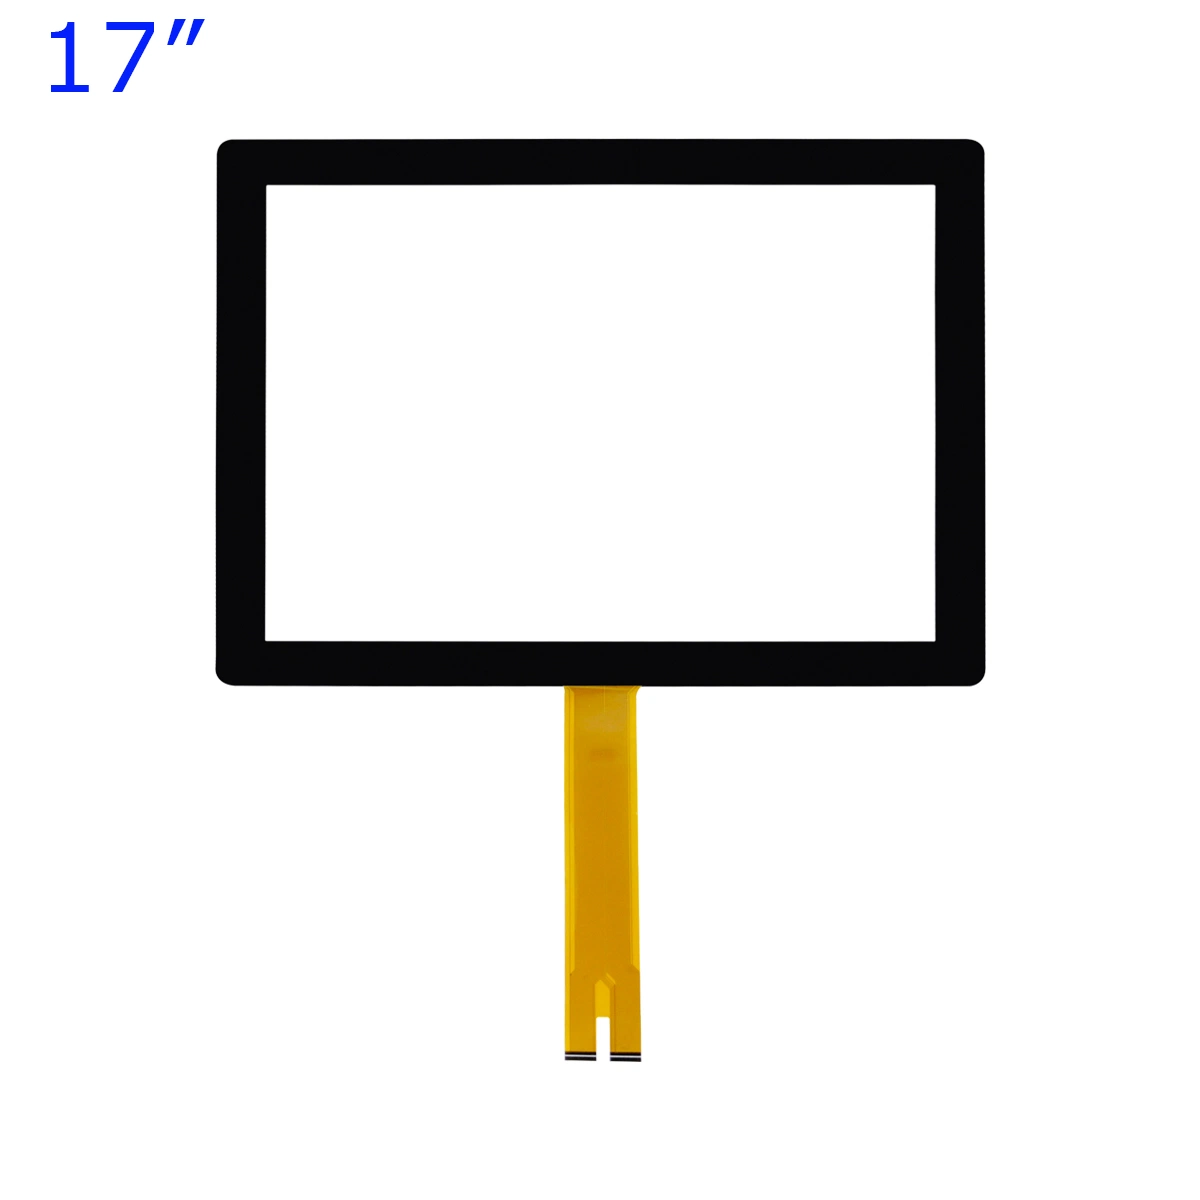 لوحة شاشة اللمس Capacitive Touch Panel واجهة USB للمعدات الصناعية